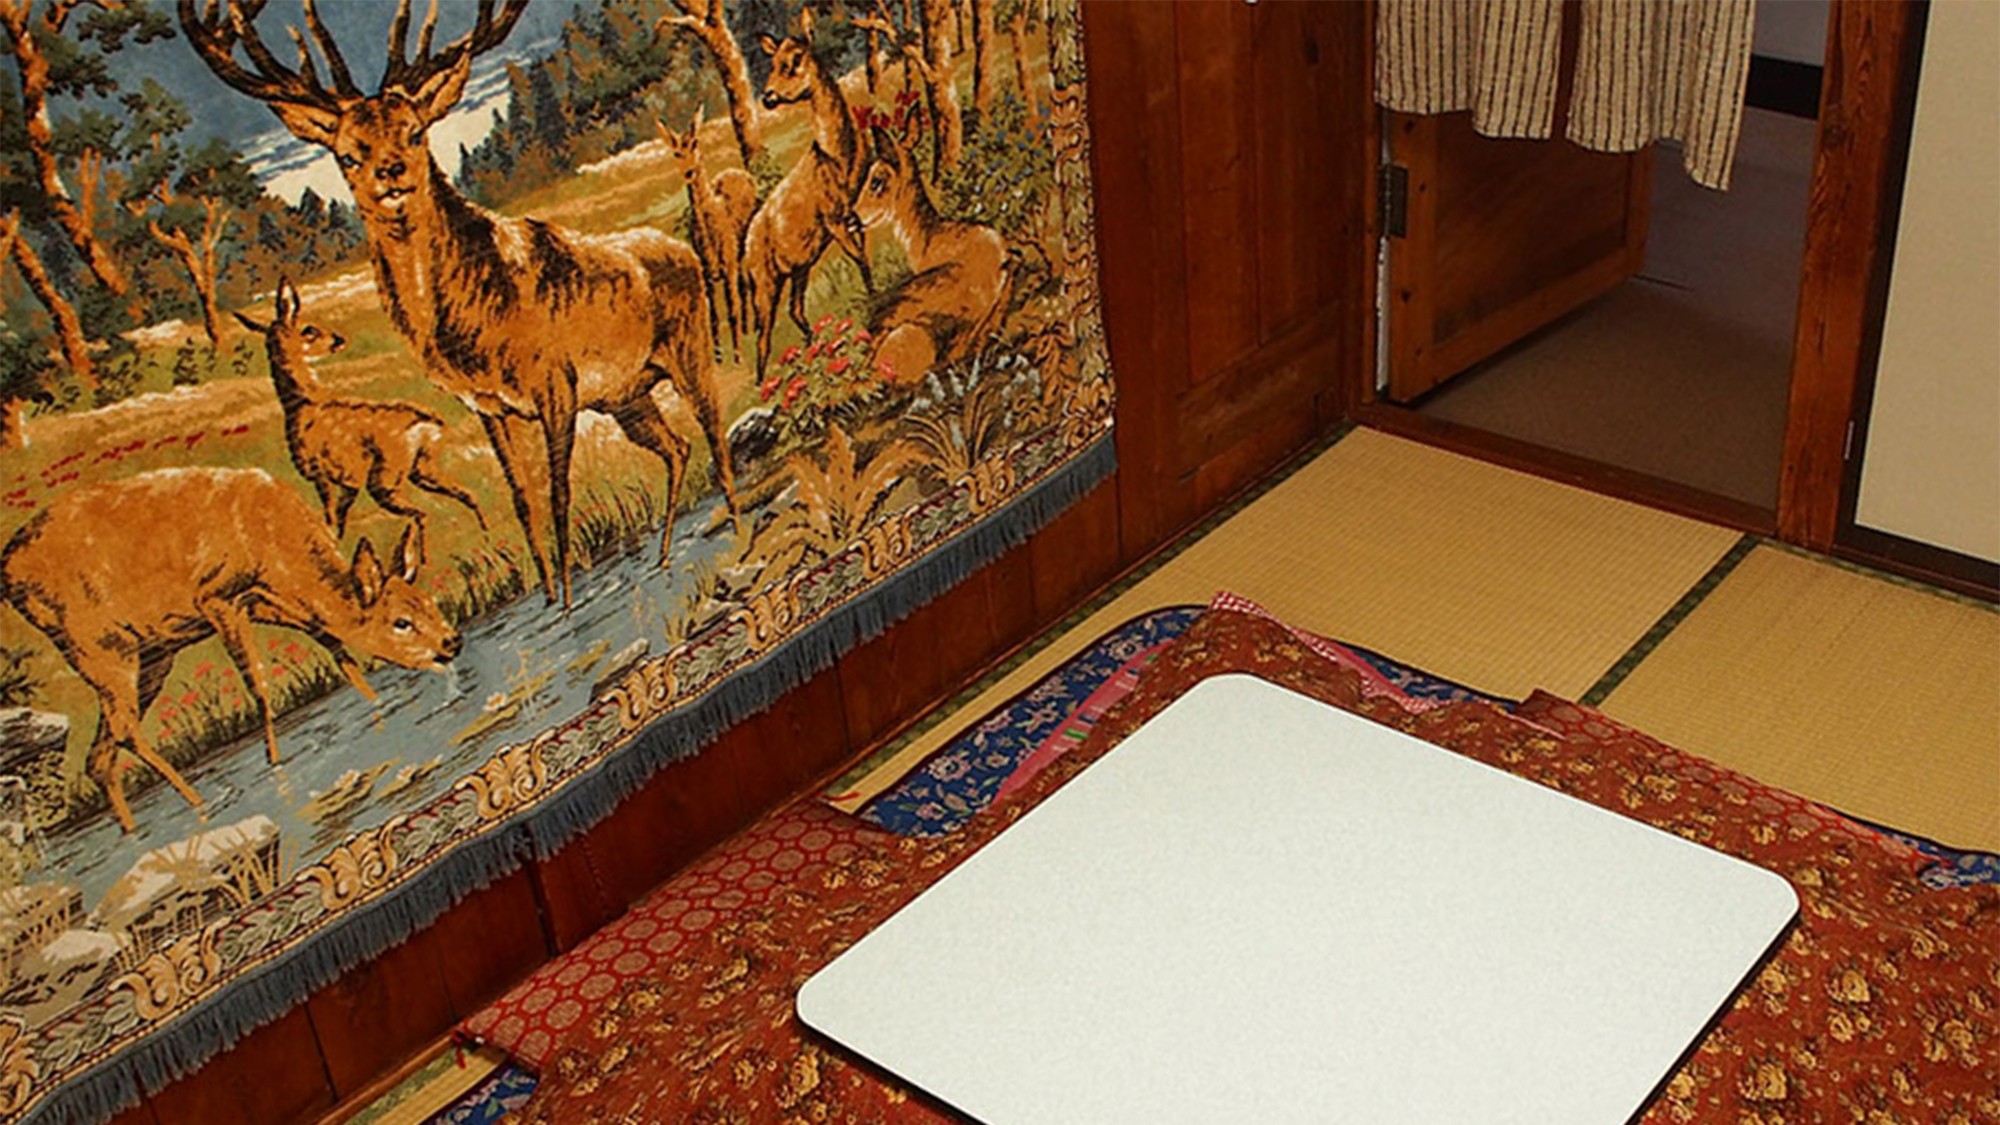 ・【白樺】 畳と白樺の中2階のある少し変わった雰囲気の和室